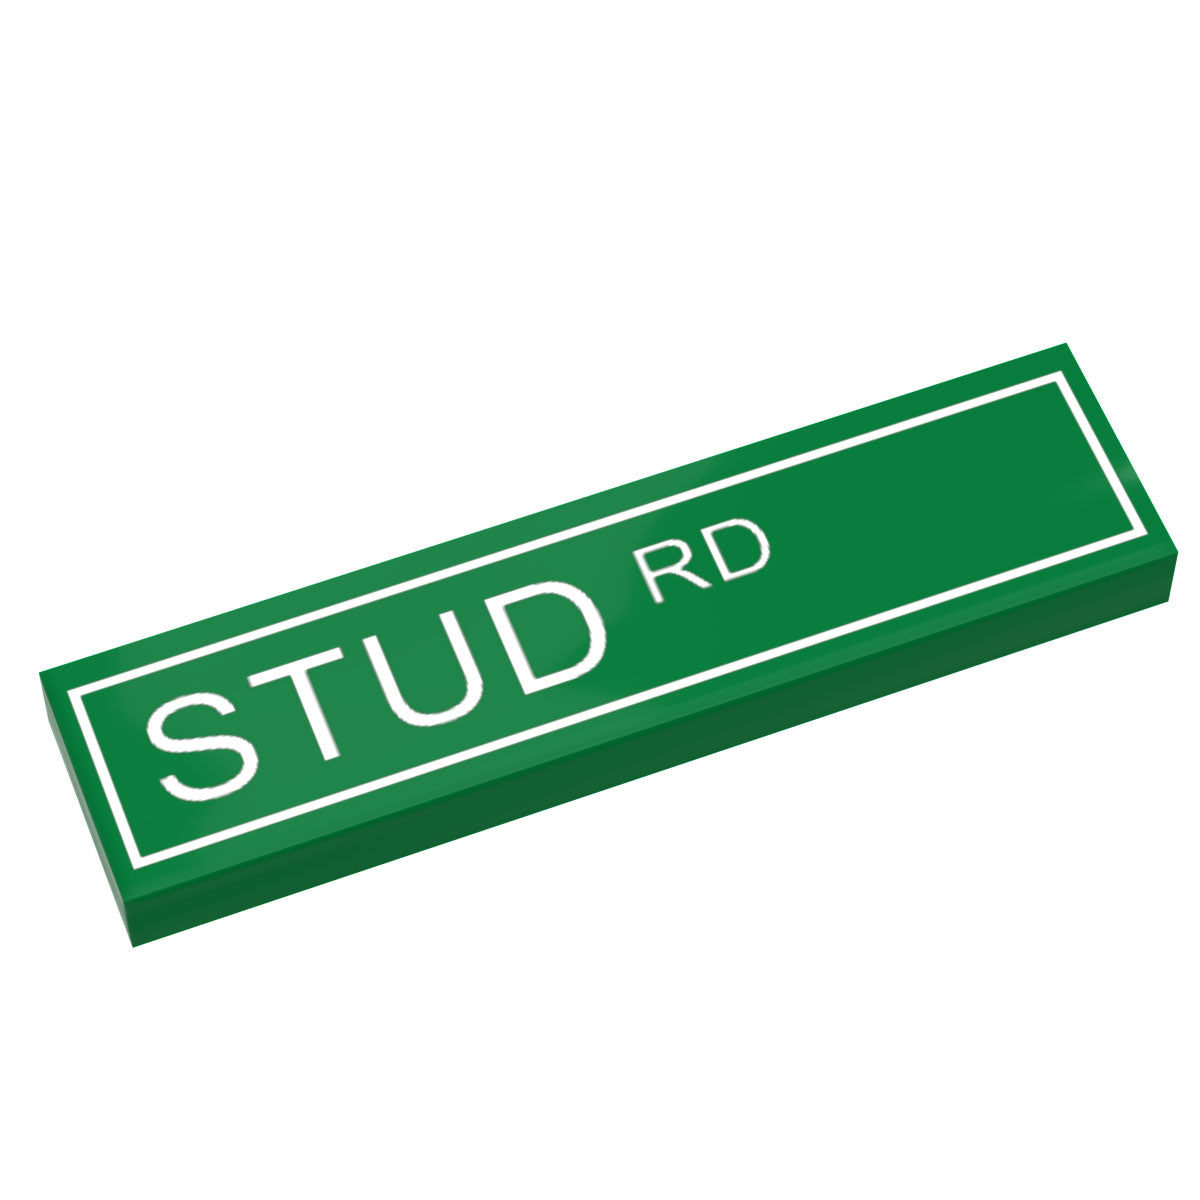 Custom LEGO Stud Road Street Sign